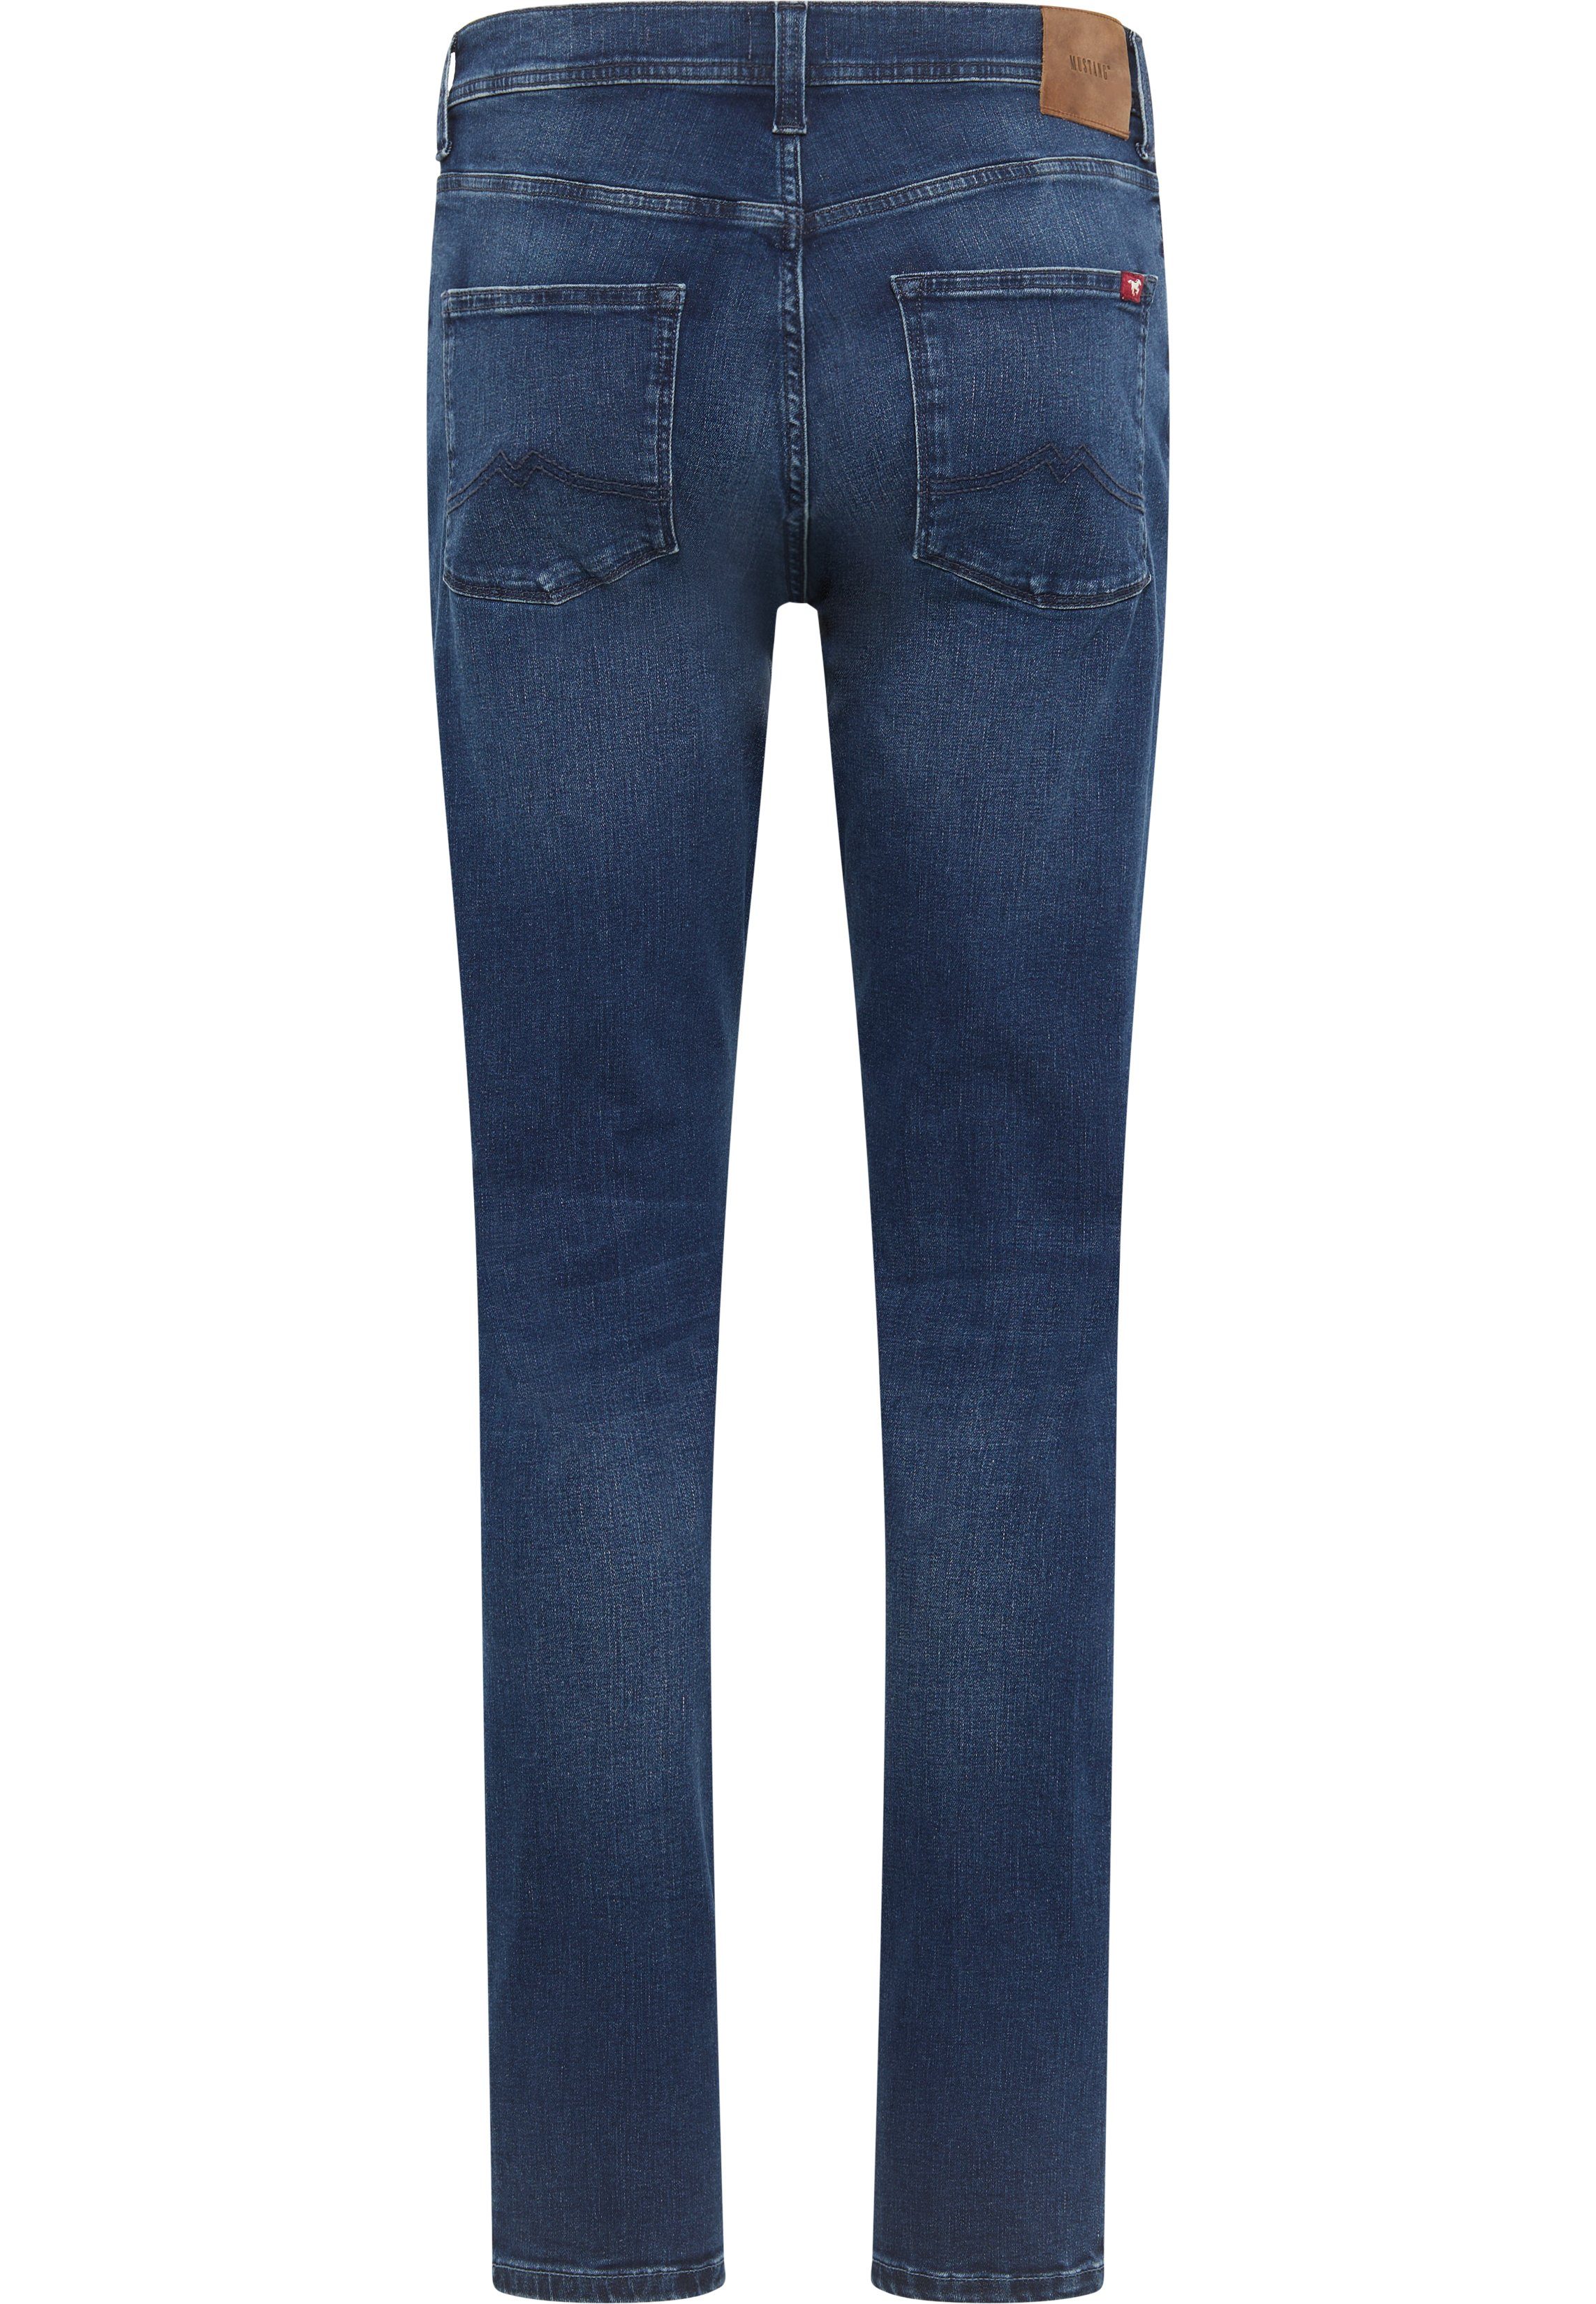 MUSTANG Slim-fit-Jeans Style blau-5000782 Vegas